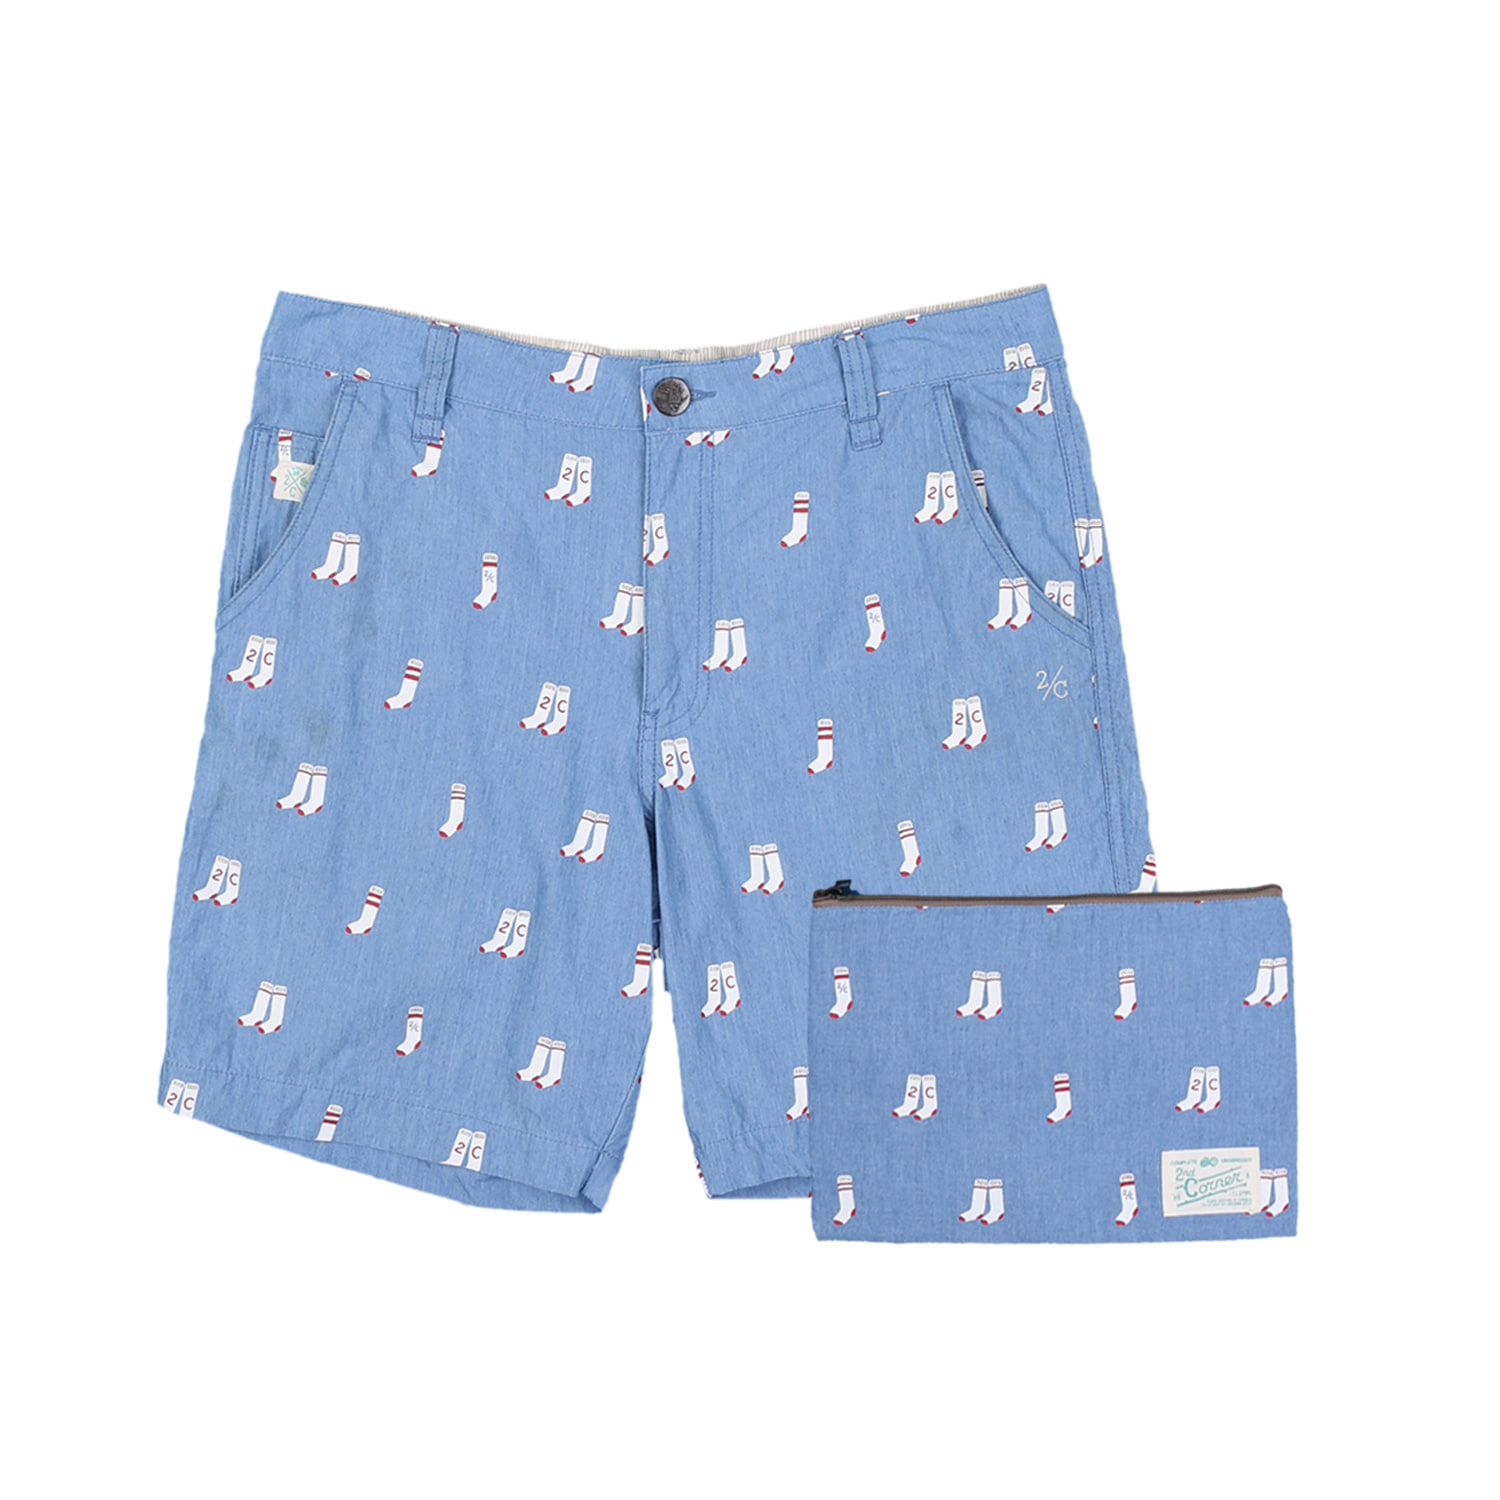 세컨드코너 2C 남성 그래픽 반바지 + 파우치 / Cotton 100% 캐쥬얼 반바지 / 여름 캠핑 반바지 Haribo - Blue Socks